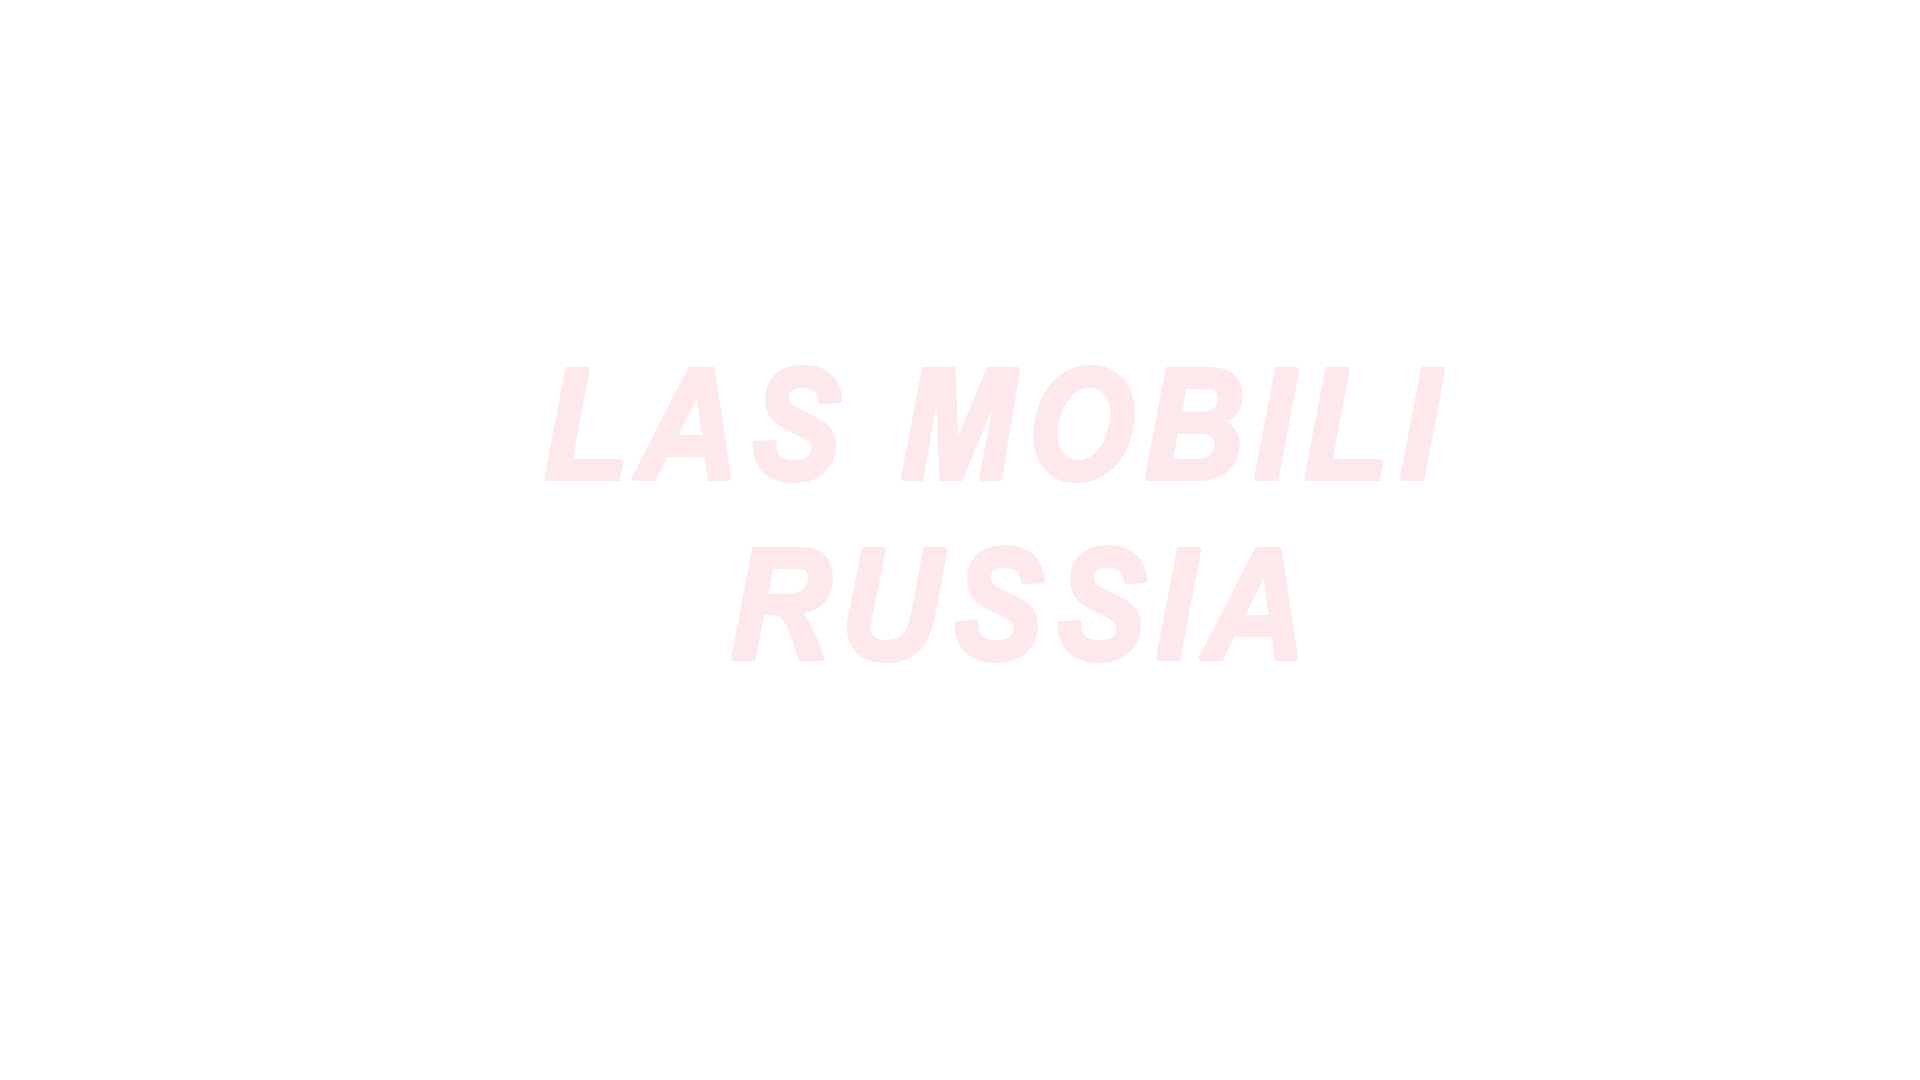 Российское представительство фабрики офисной мебели LAS Mobili Russia